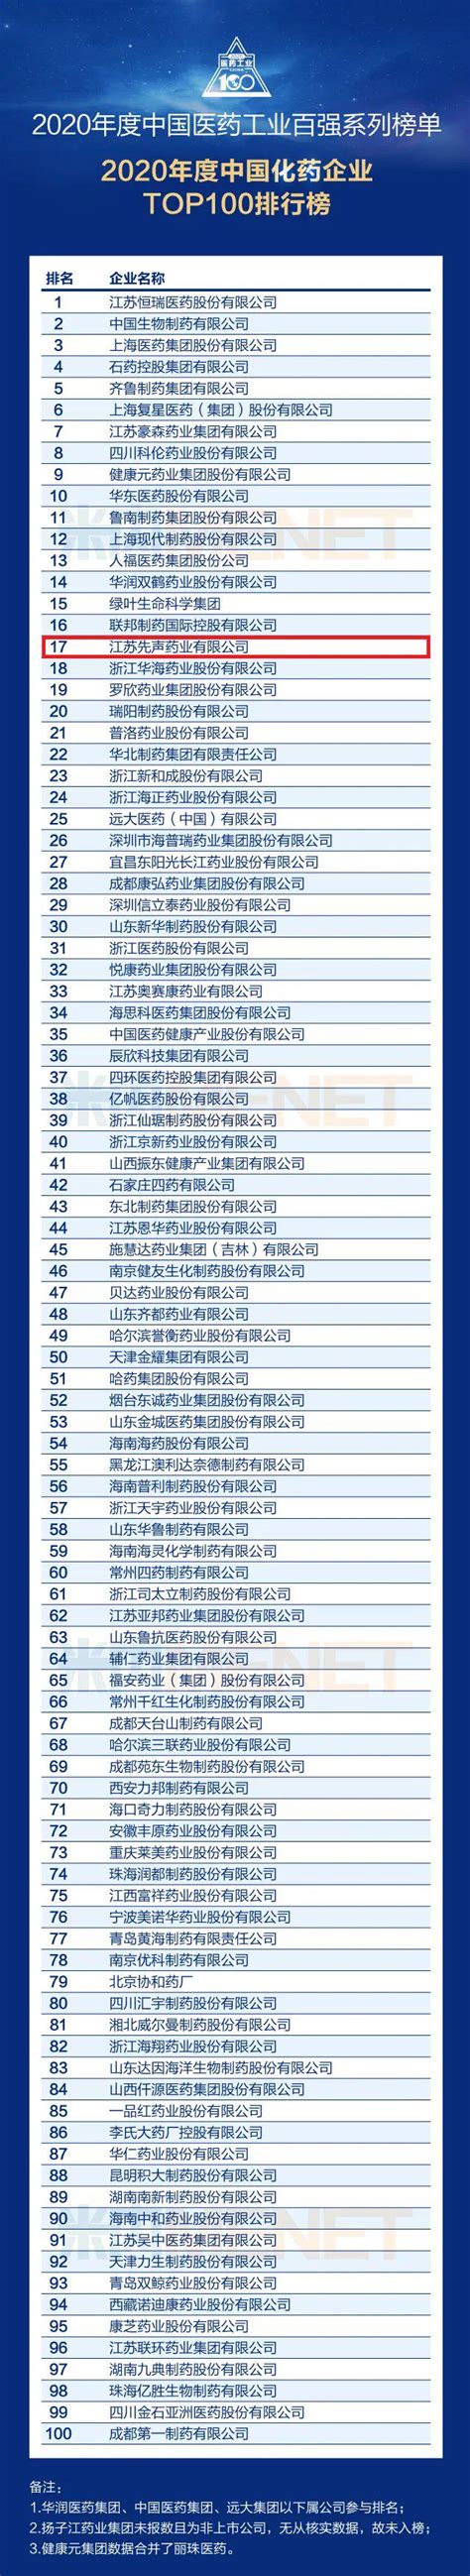 年度中国生物医药企业创新力排行榜出炉 健康元蝉联中国BigPharma创新力TOP10-商业-金融界